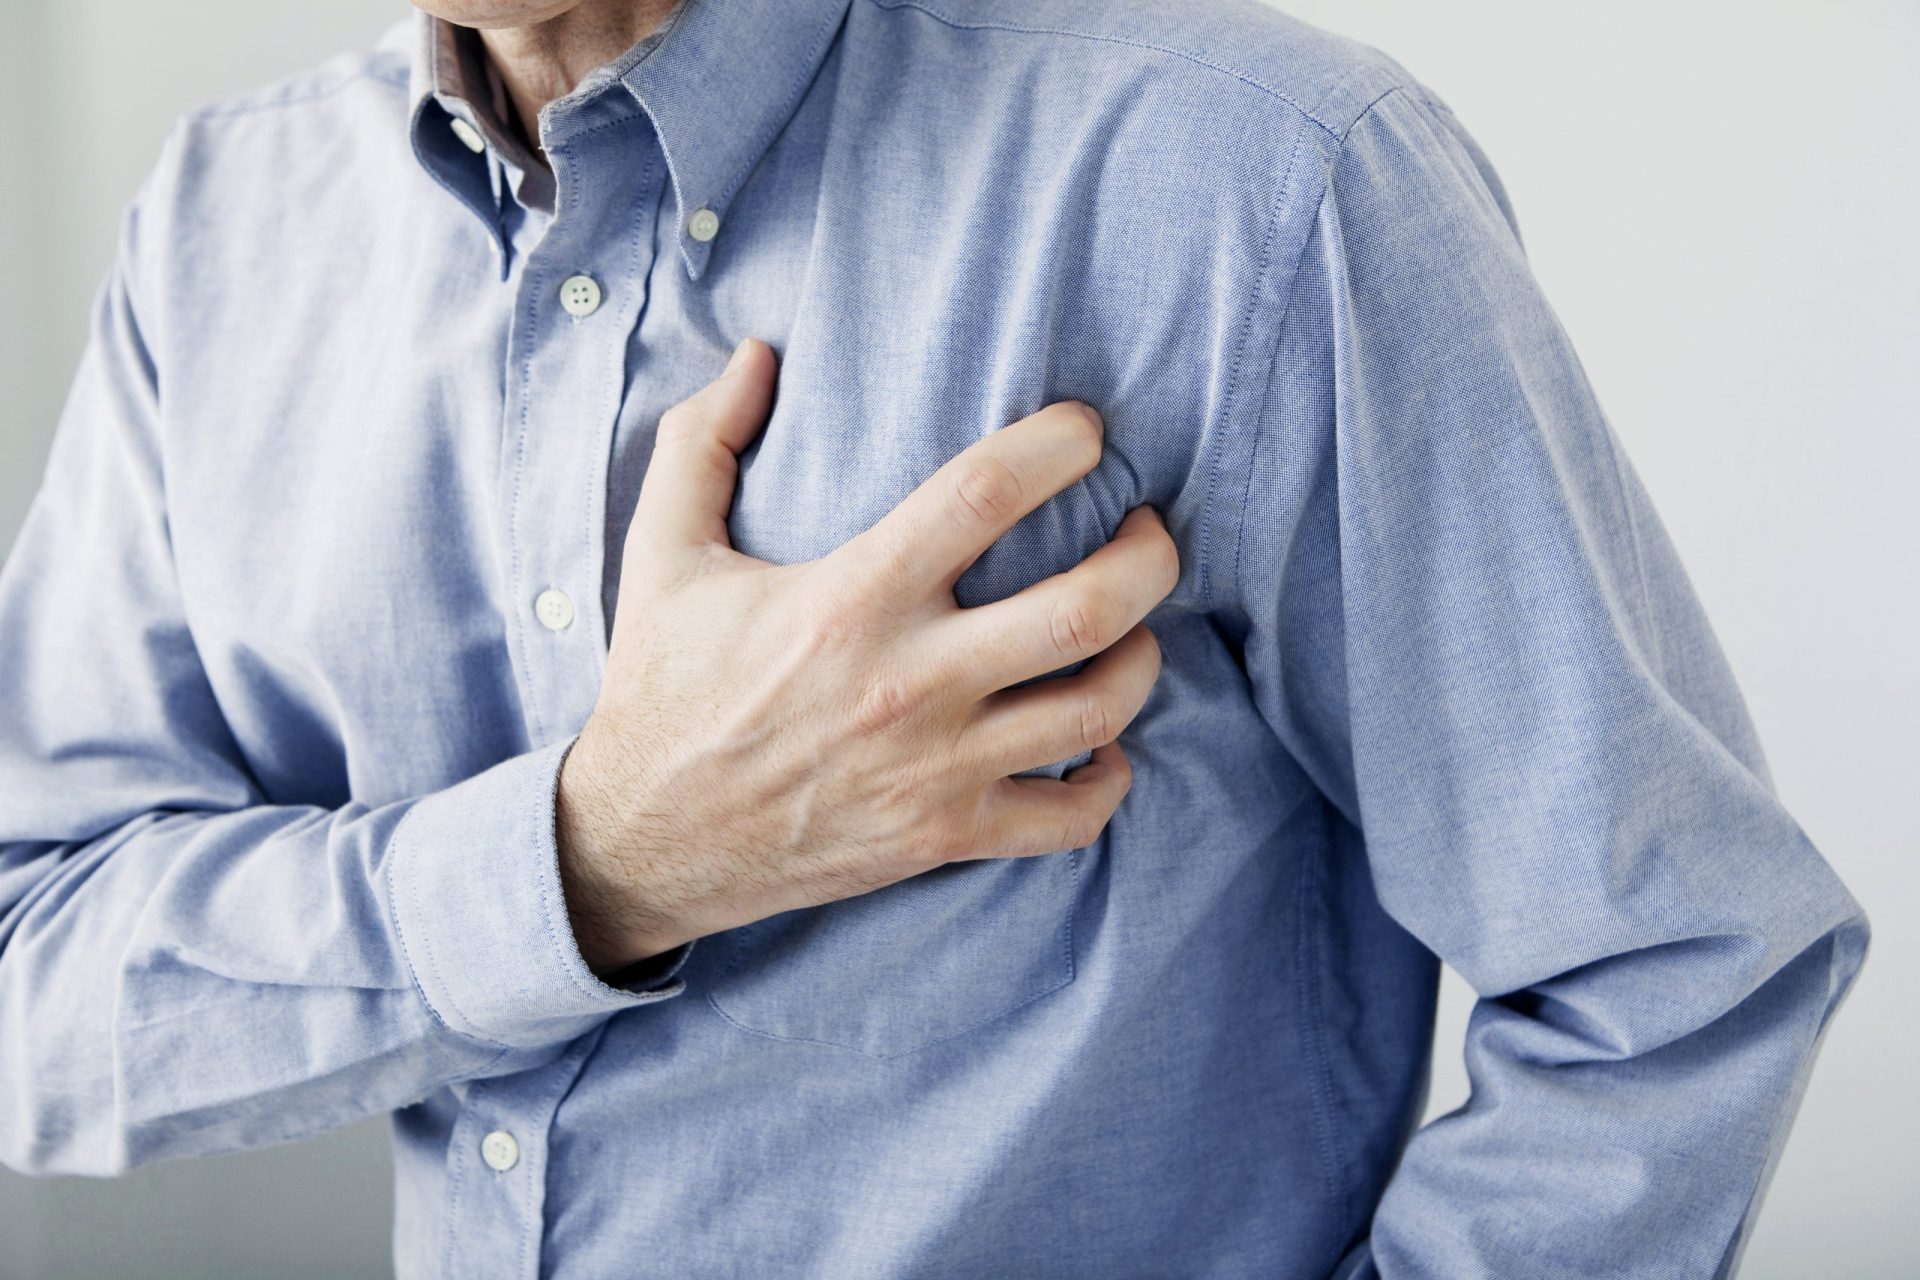 Sinais de ataque cardíaco podem passar despercebidos nos hospitais